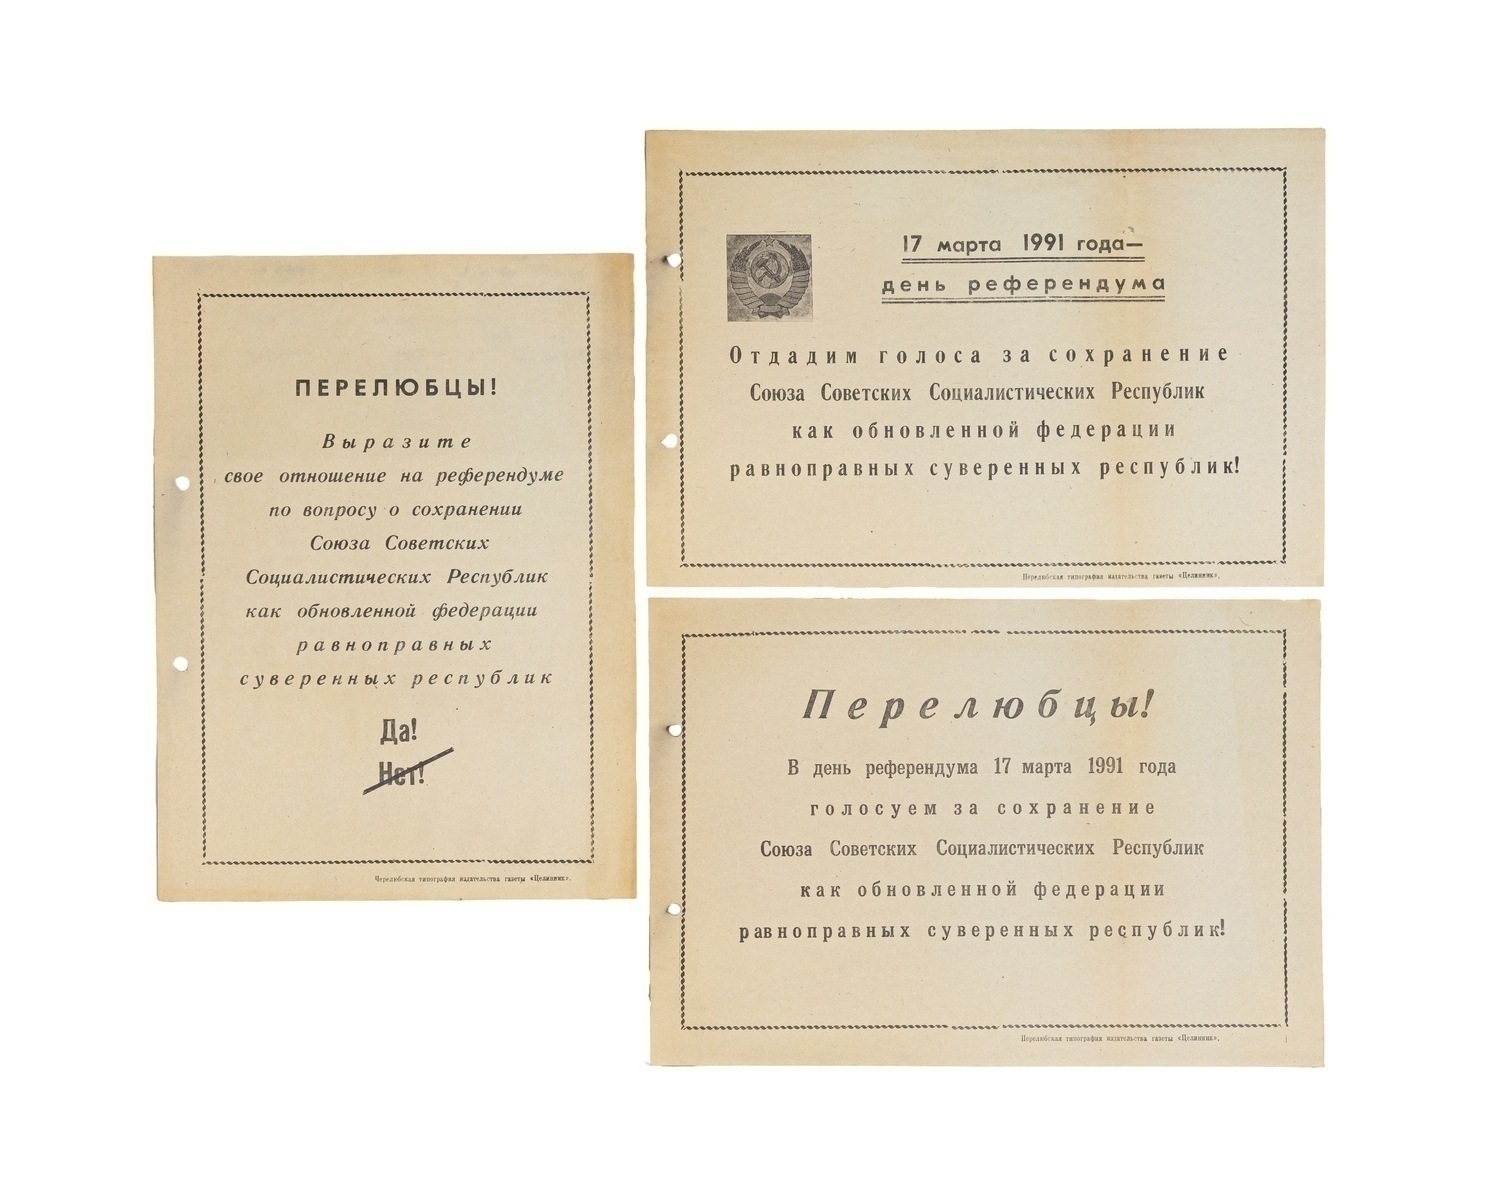 3 агитационные листовки в поддержку сохранения СССР к референдуму 17 марта 1991 года. Перелюб (Саратовская область).